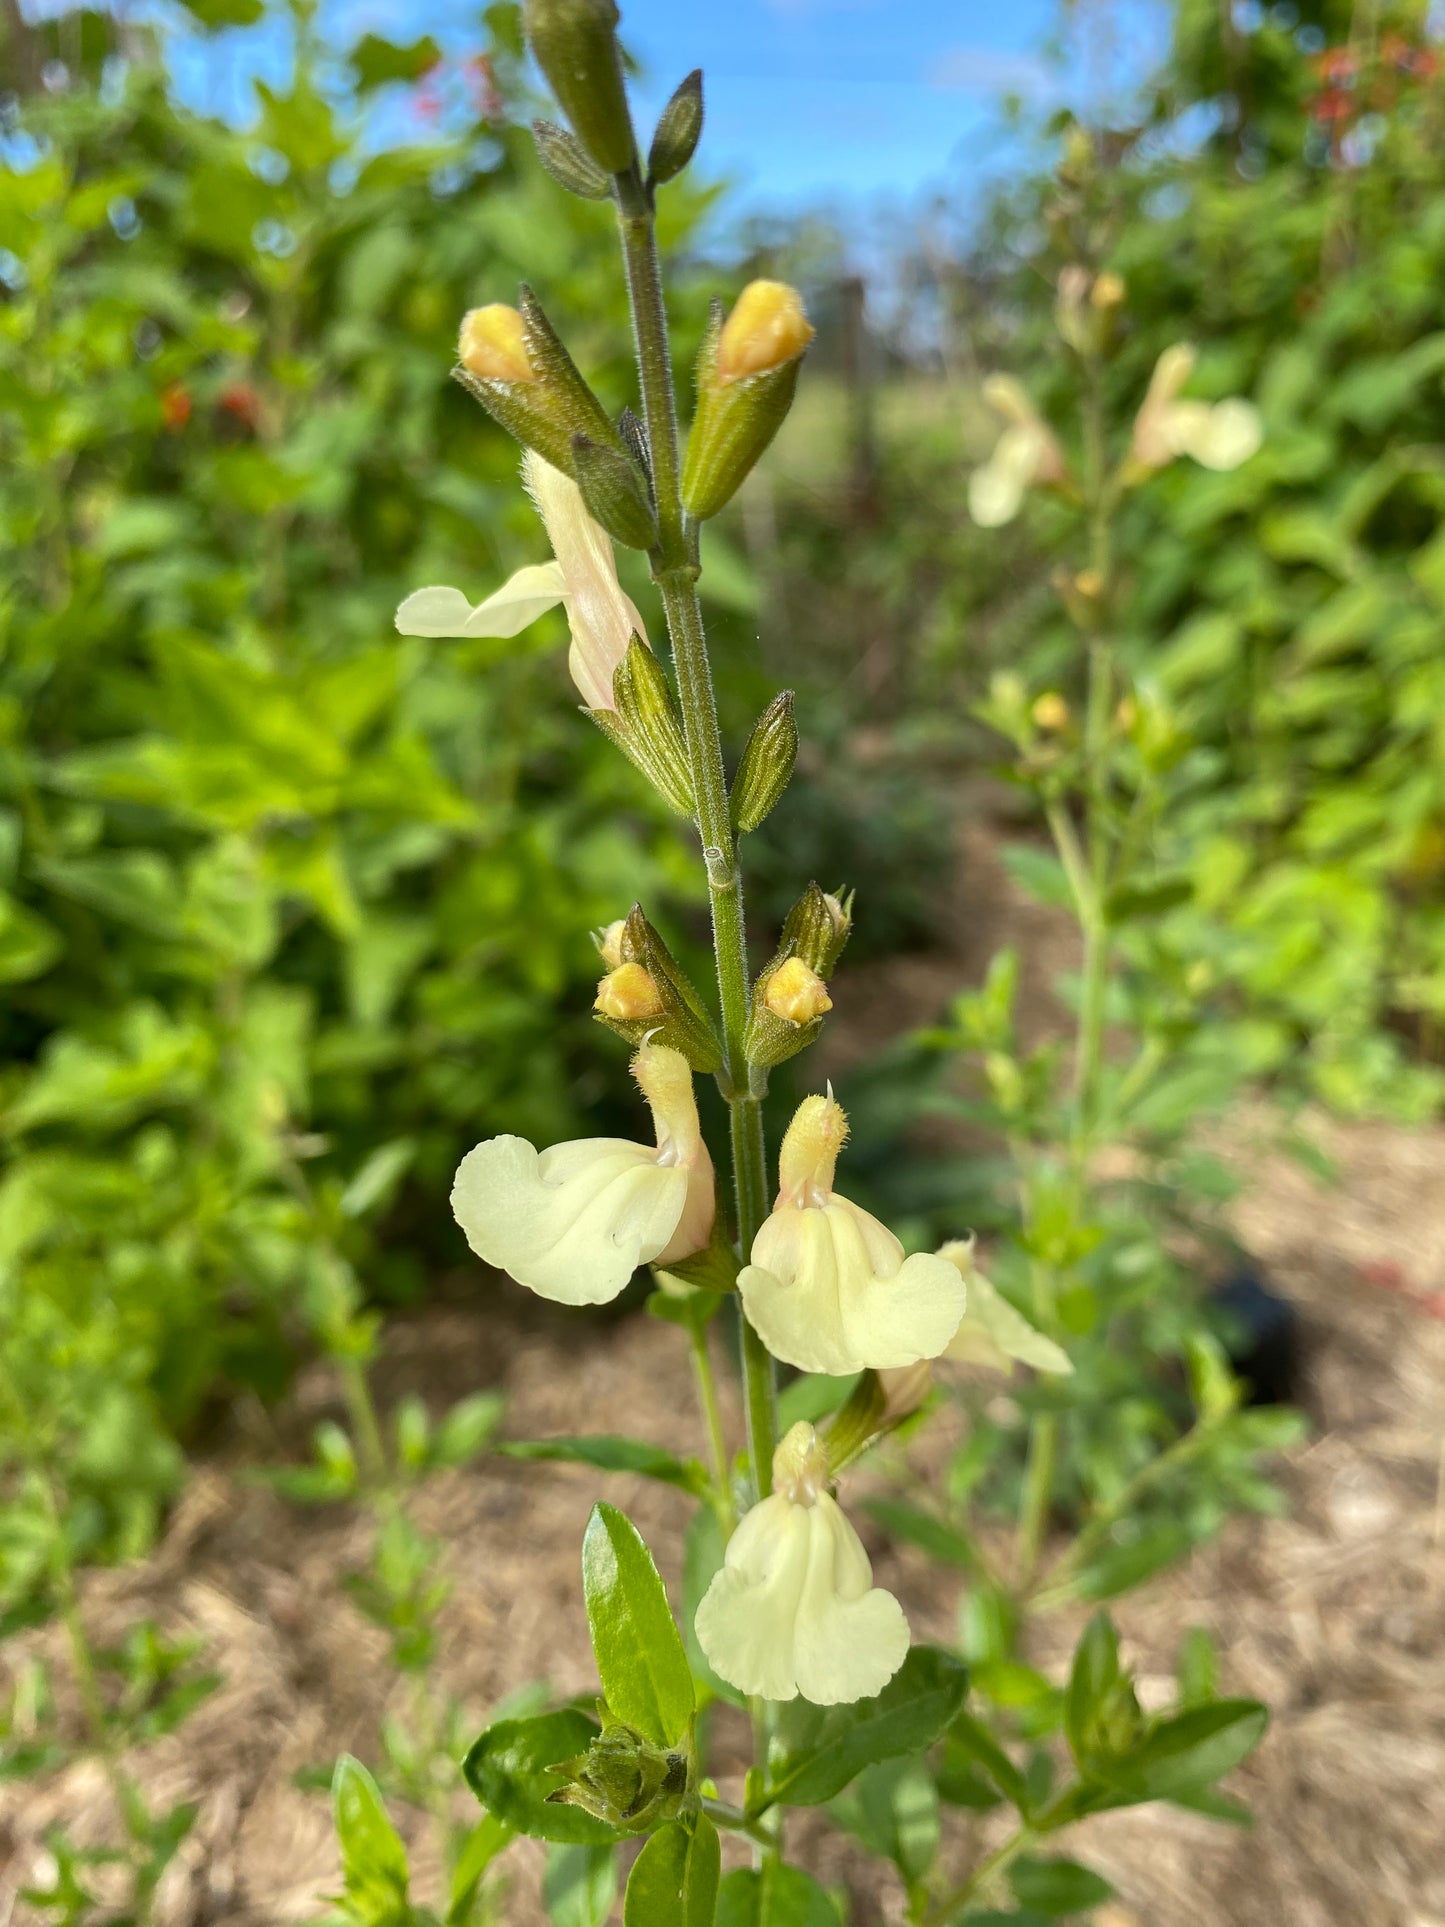 Salvia x jamensis yellow